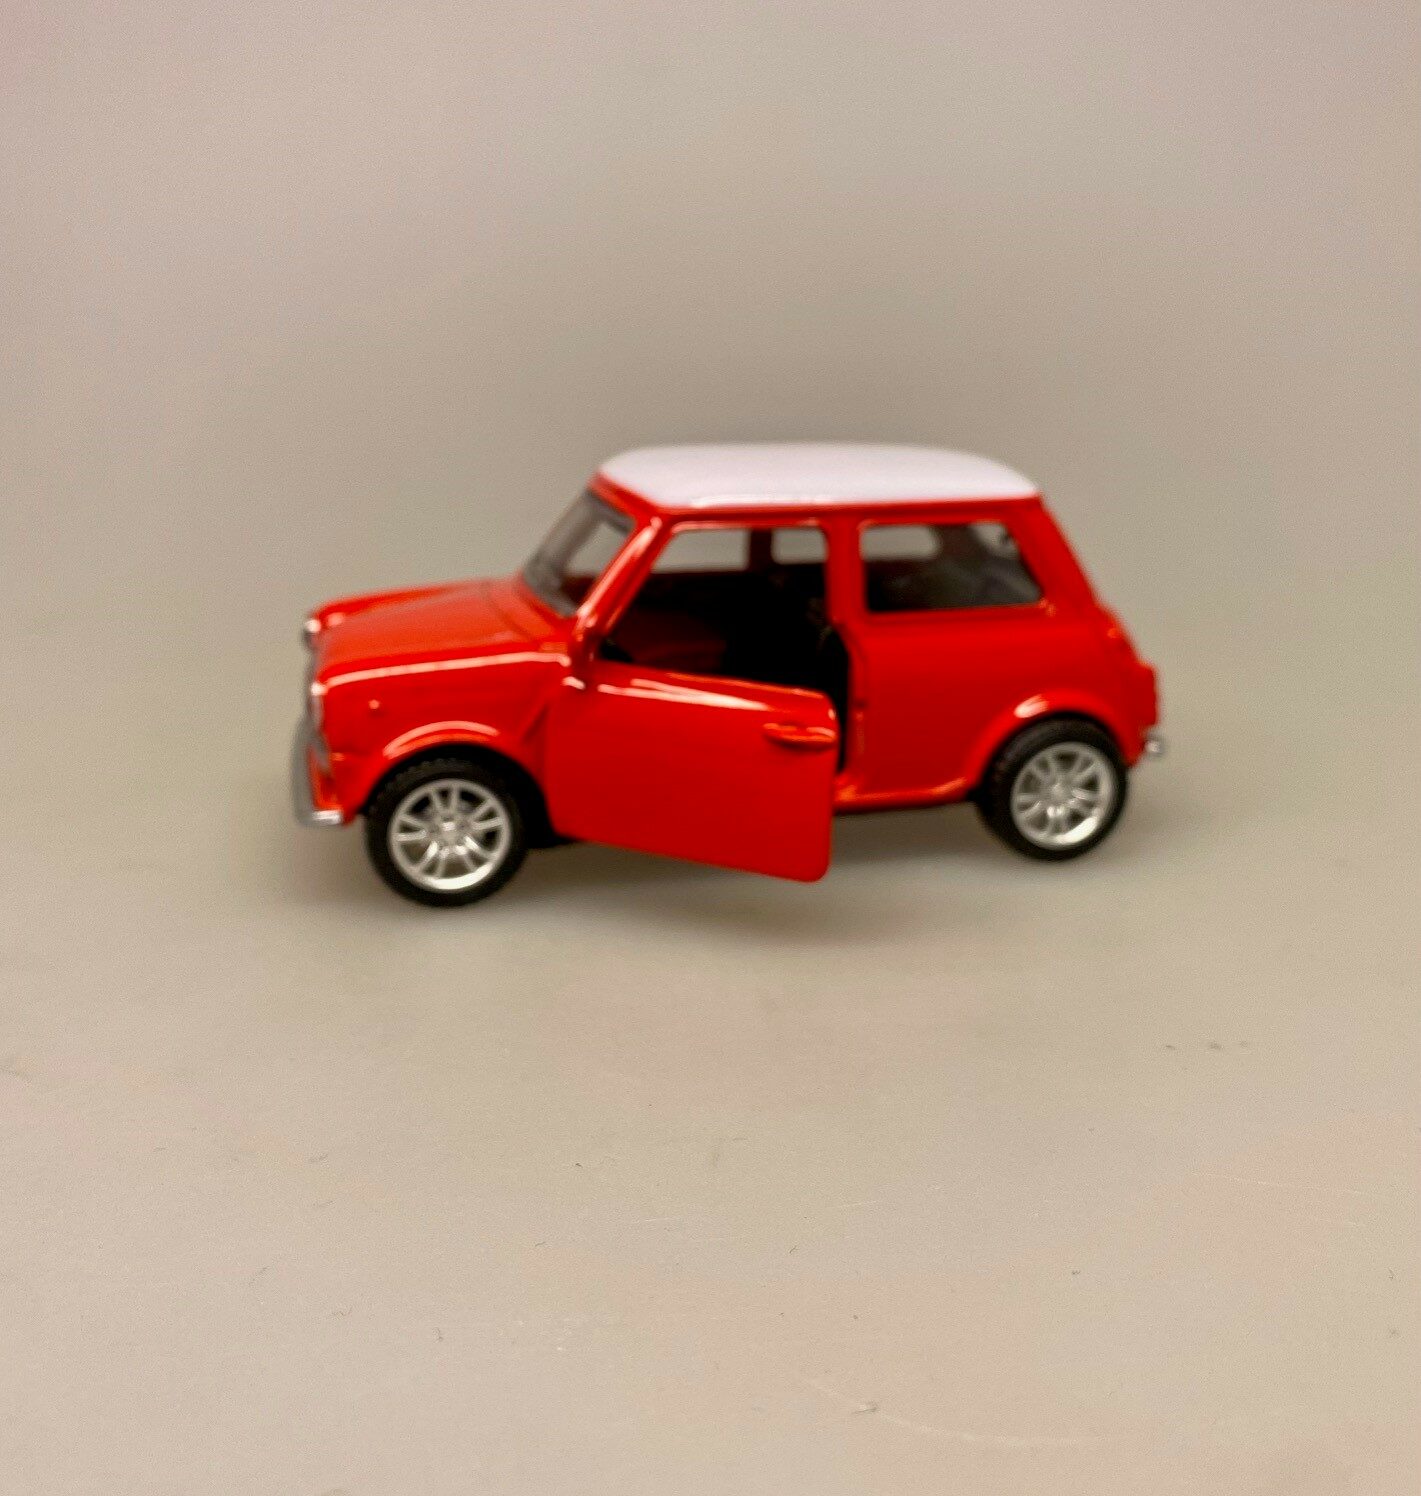 Mini Cooper - Morris Minor Stor - Rød, maskot, modelbil, metal, kvalitet, legetøjsbil, legetøj, bil, ny, original, kopi, ægte, kvalitet, flot, symbolsk, gave, gaveide, kørekort, tilllykke, sangskjuler, biti, ribe